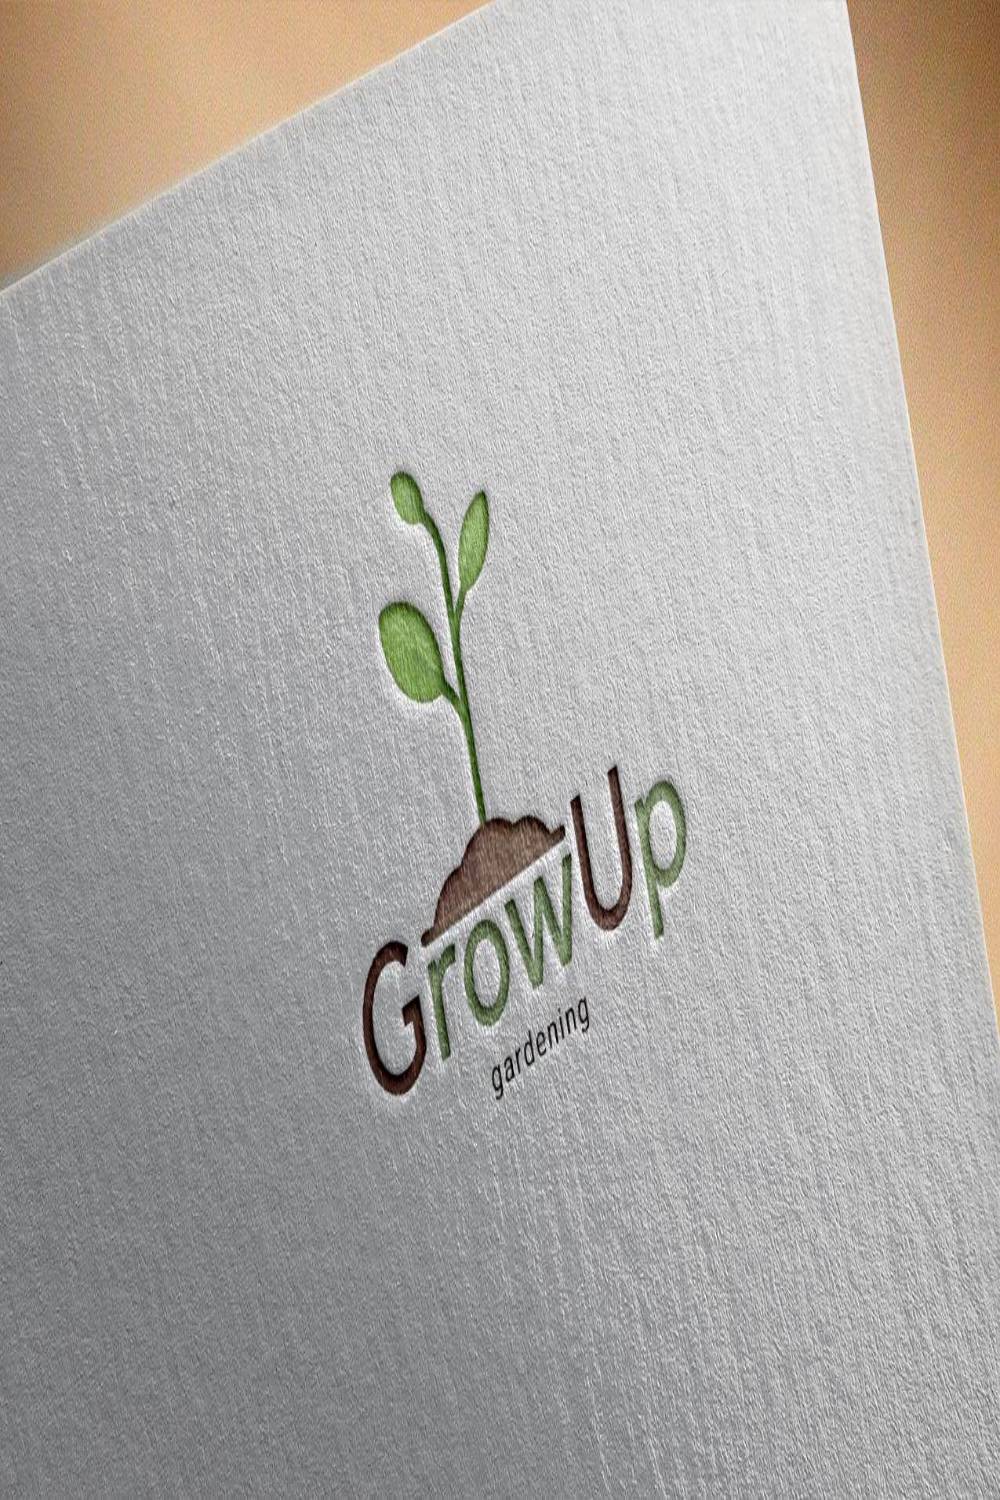 GrowUp Gardening Logo Design pinterest image.